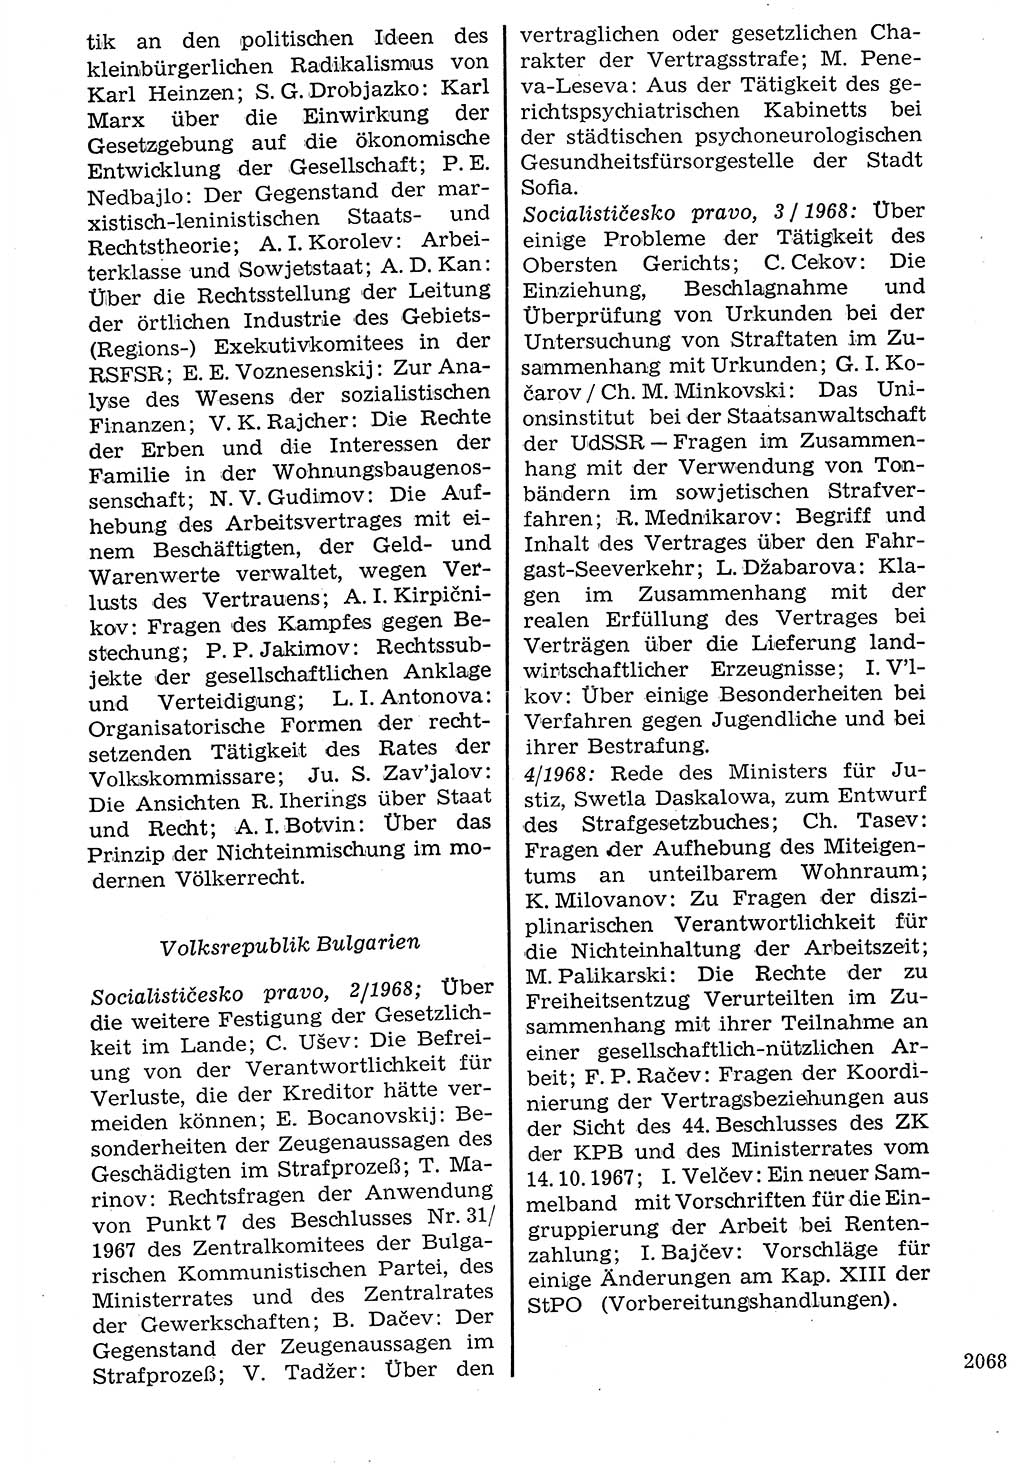 Staat und Recht (StuR), 17. Jahrgang [Deutsche Demokratische Republik (DDR)] 1968, Seite 2068 (StuR DDR 1968, S. 2068)